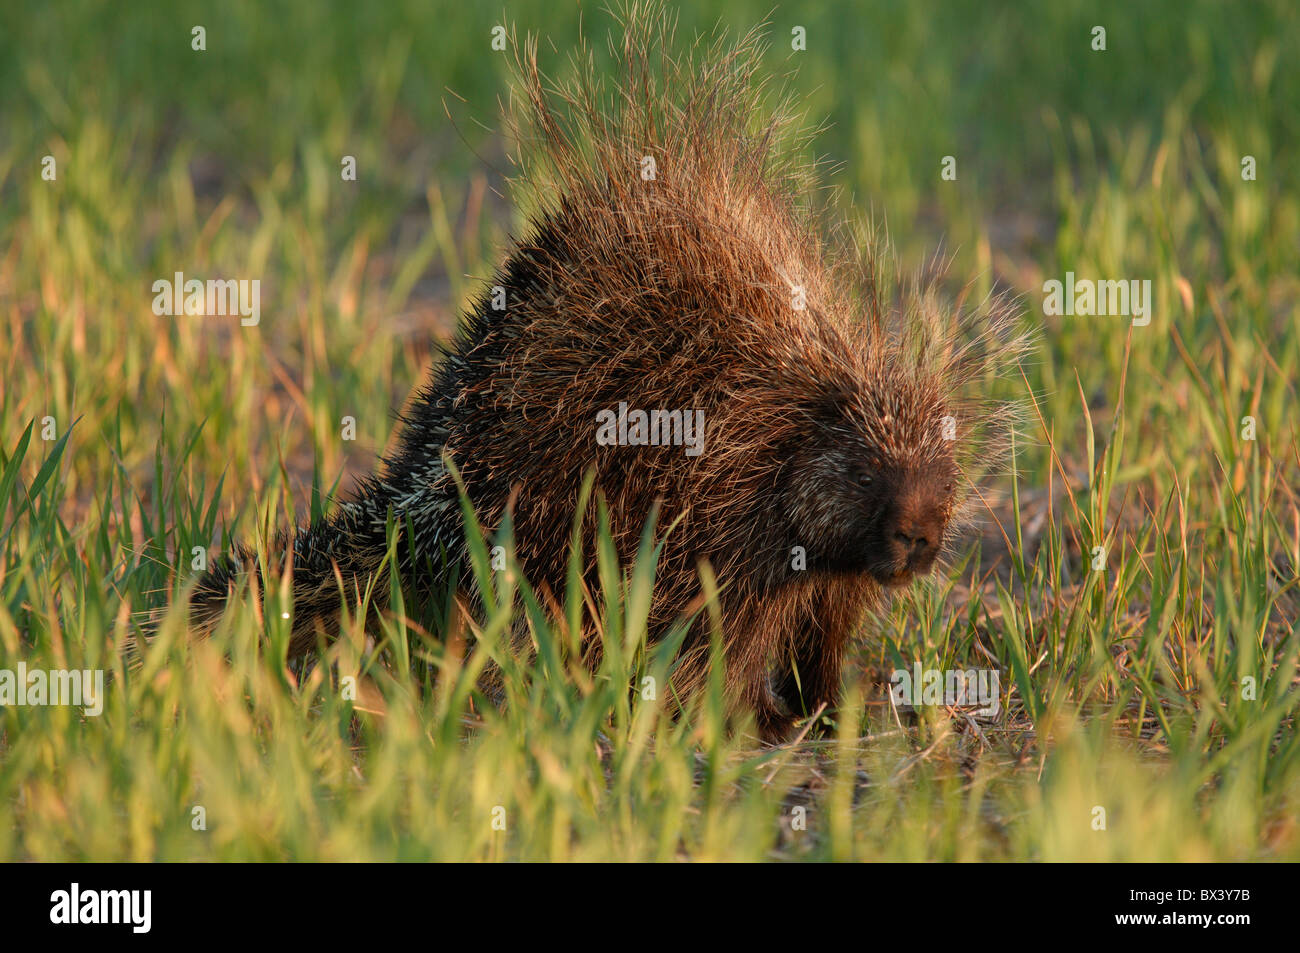 Porcupine (Erethizon dorsatum), sitting in green summer grass, portrait Stock Photo